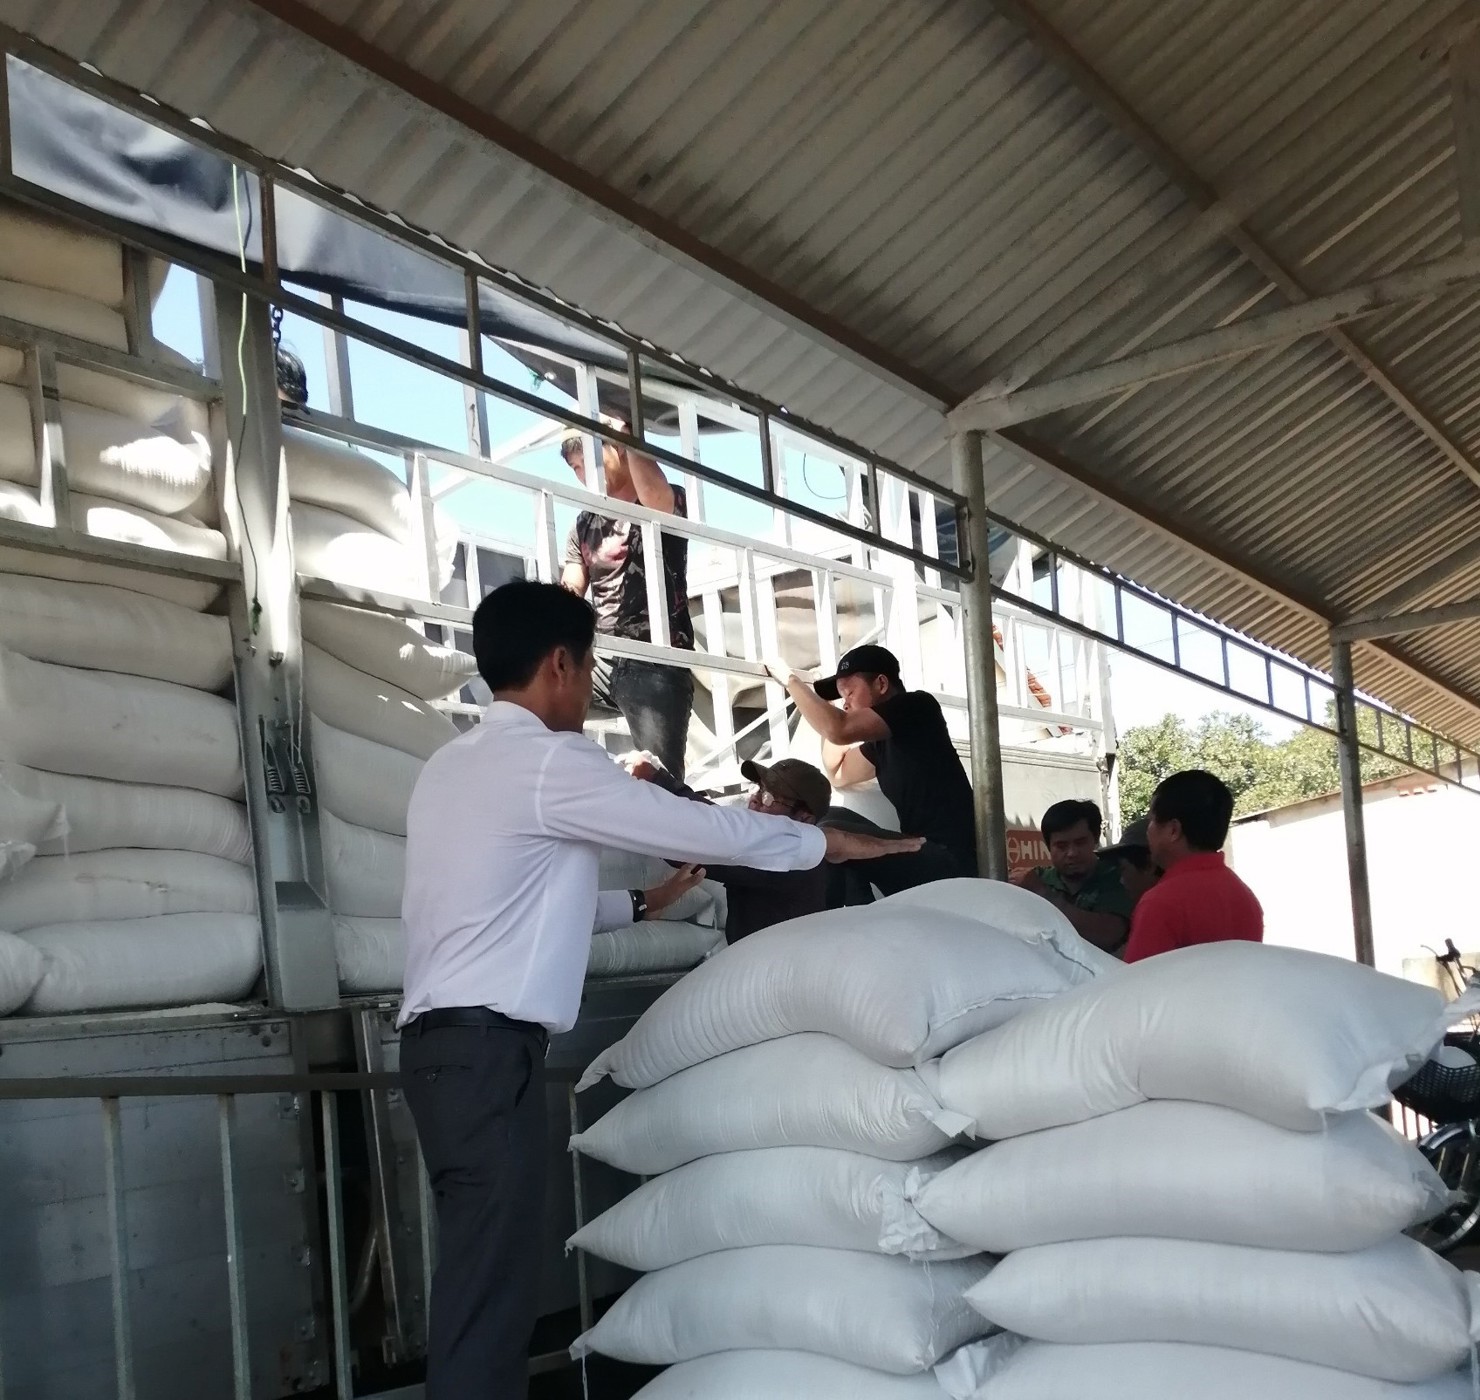 Cục DTNN khu vực Đông Nam Bộ vừa hoàn thành xuất cấp, bàn giao gần 130 tấn gạo hỗ trợ học sinh 2 tỉnh (Bình Phước và Tây Ninh)